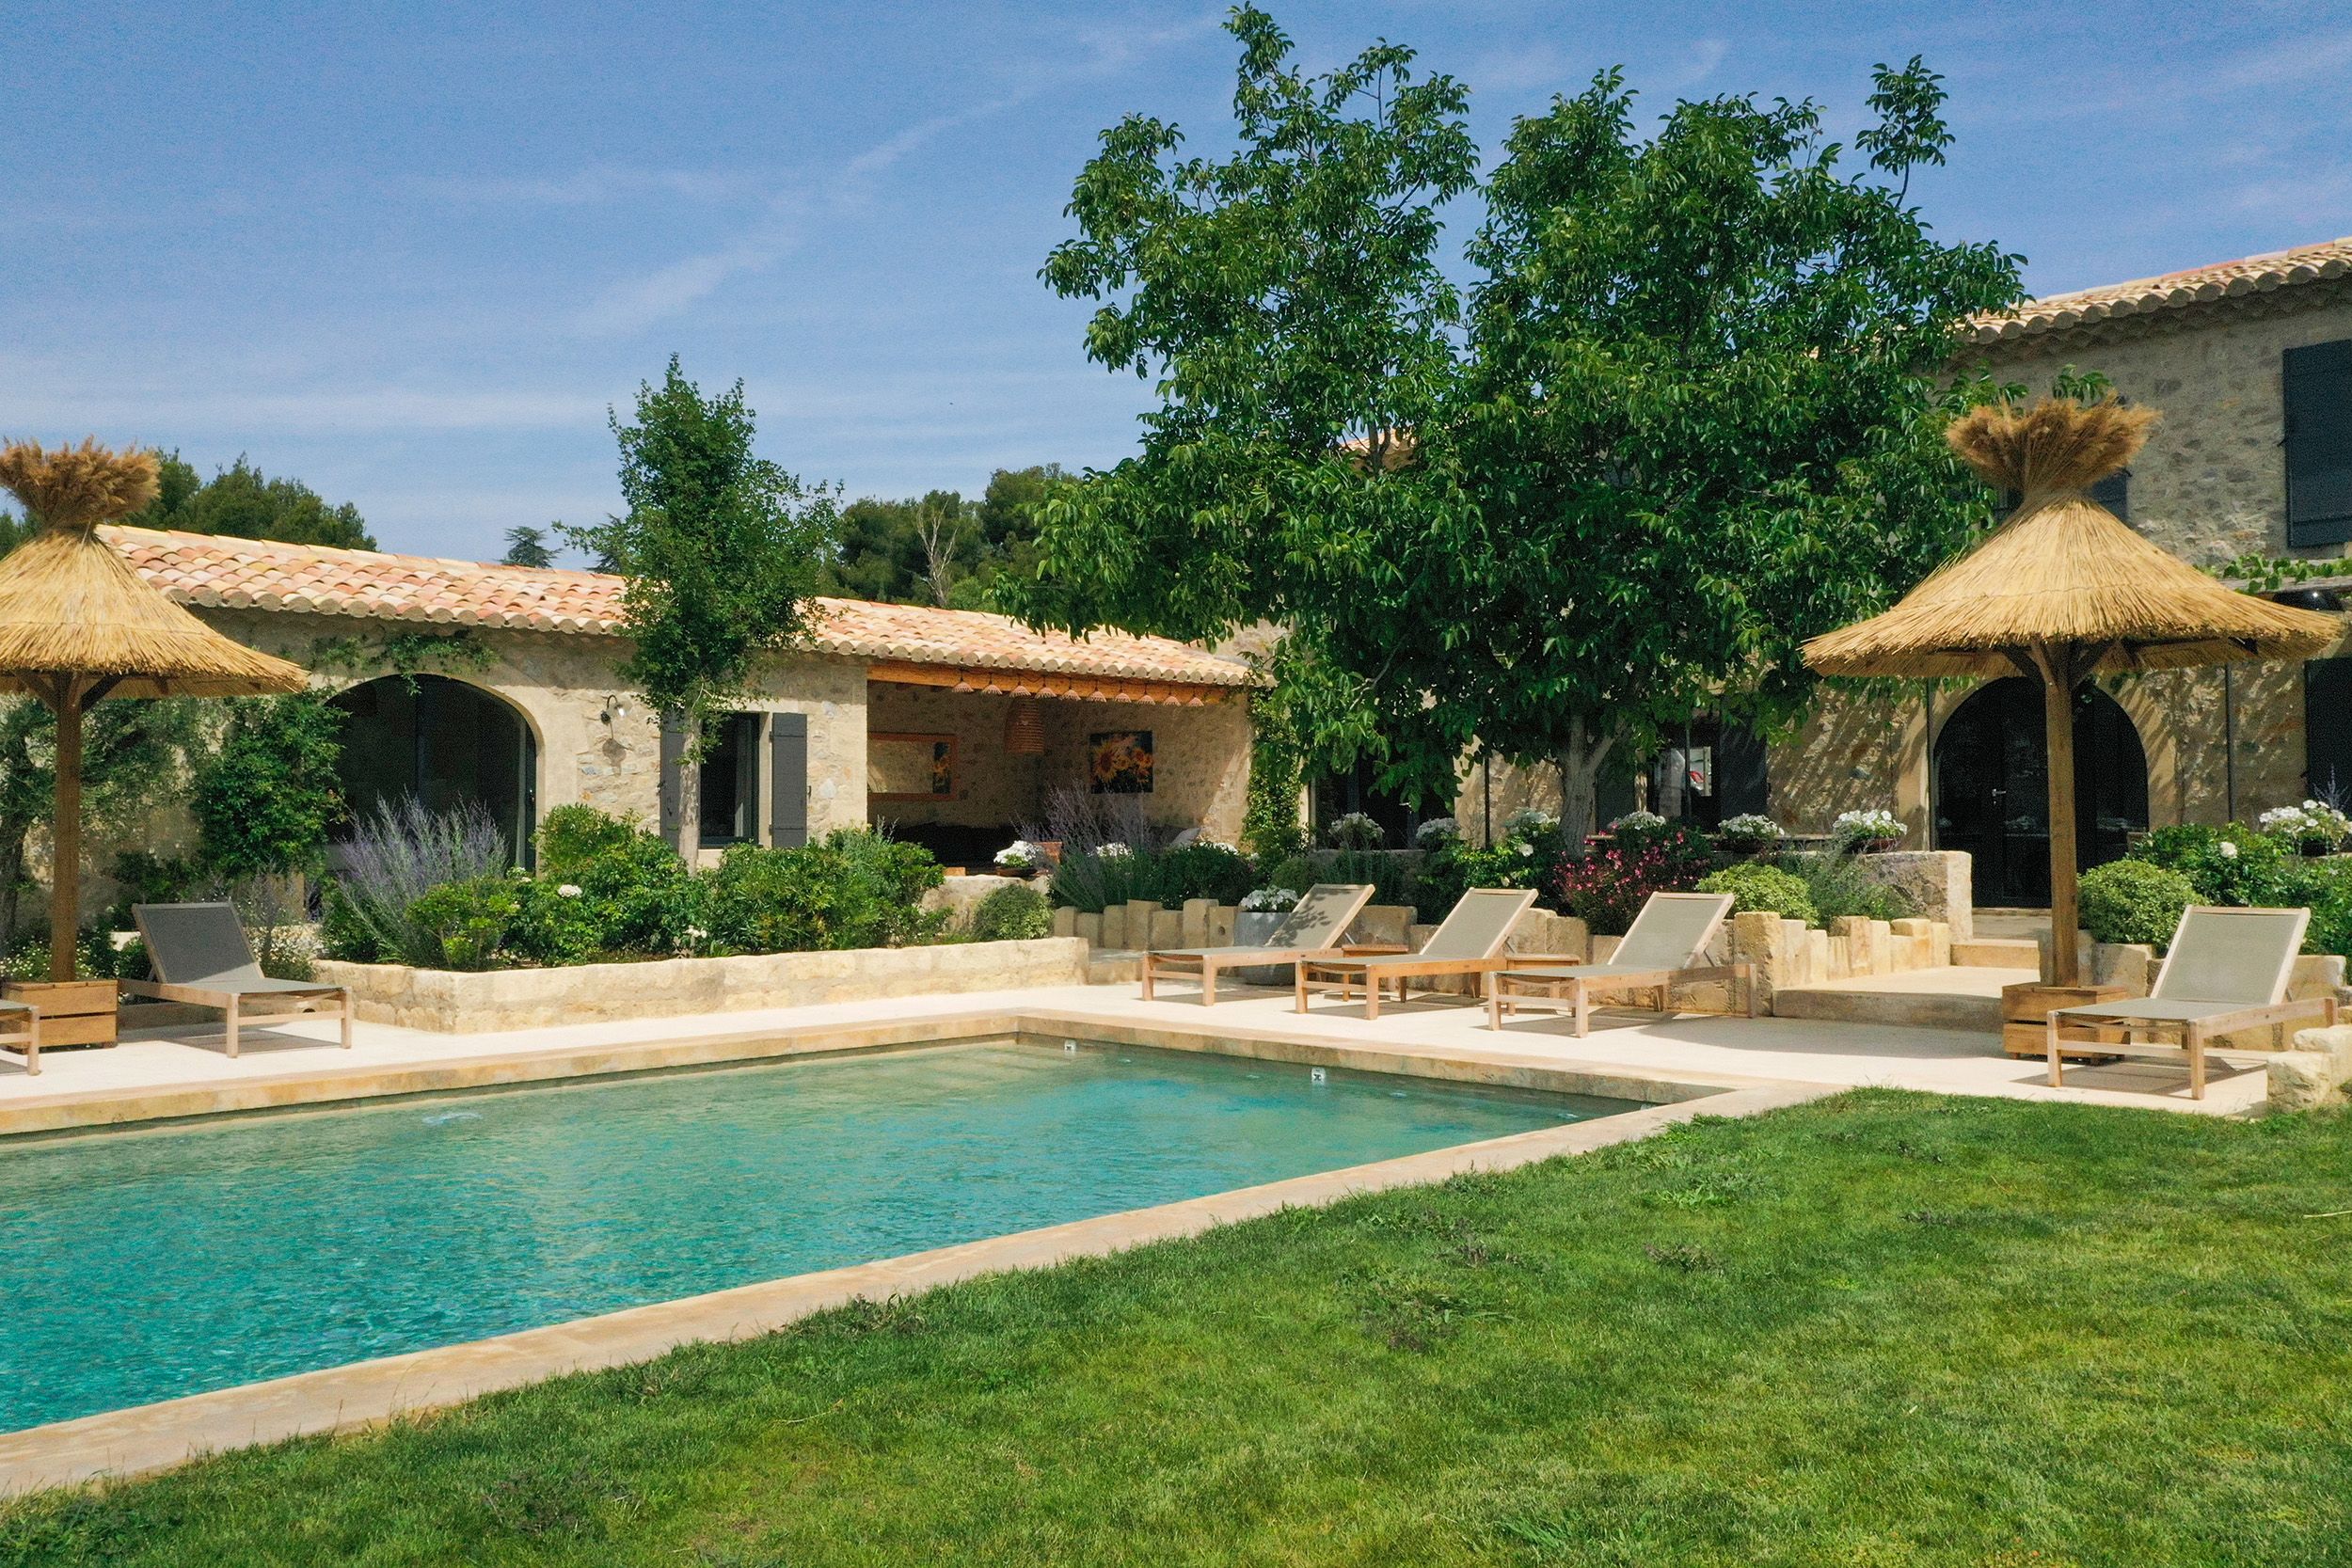 Location vacances en Provence - mas de charme dans les Alpilles avec piscine chauffée